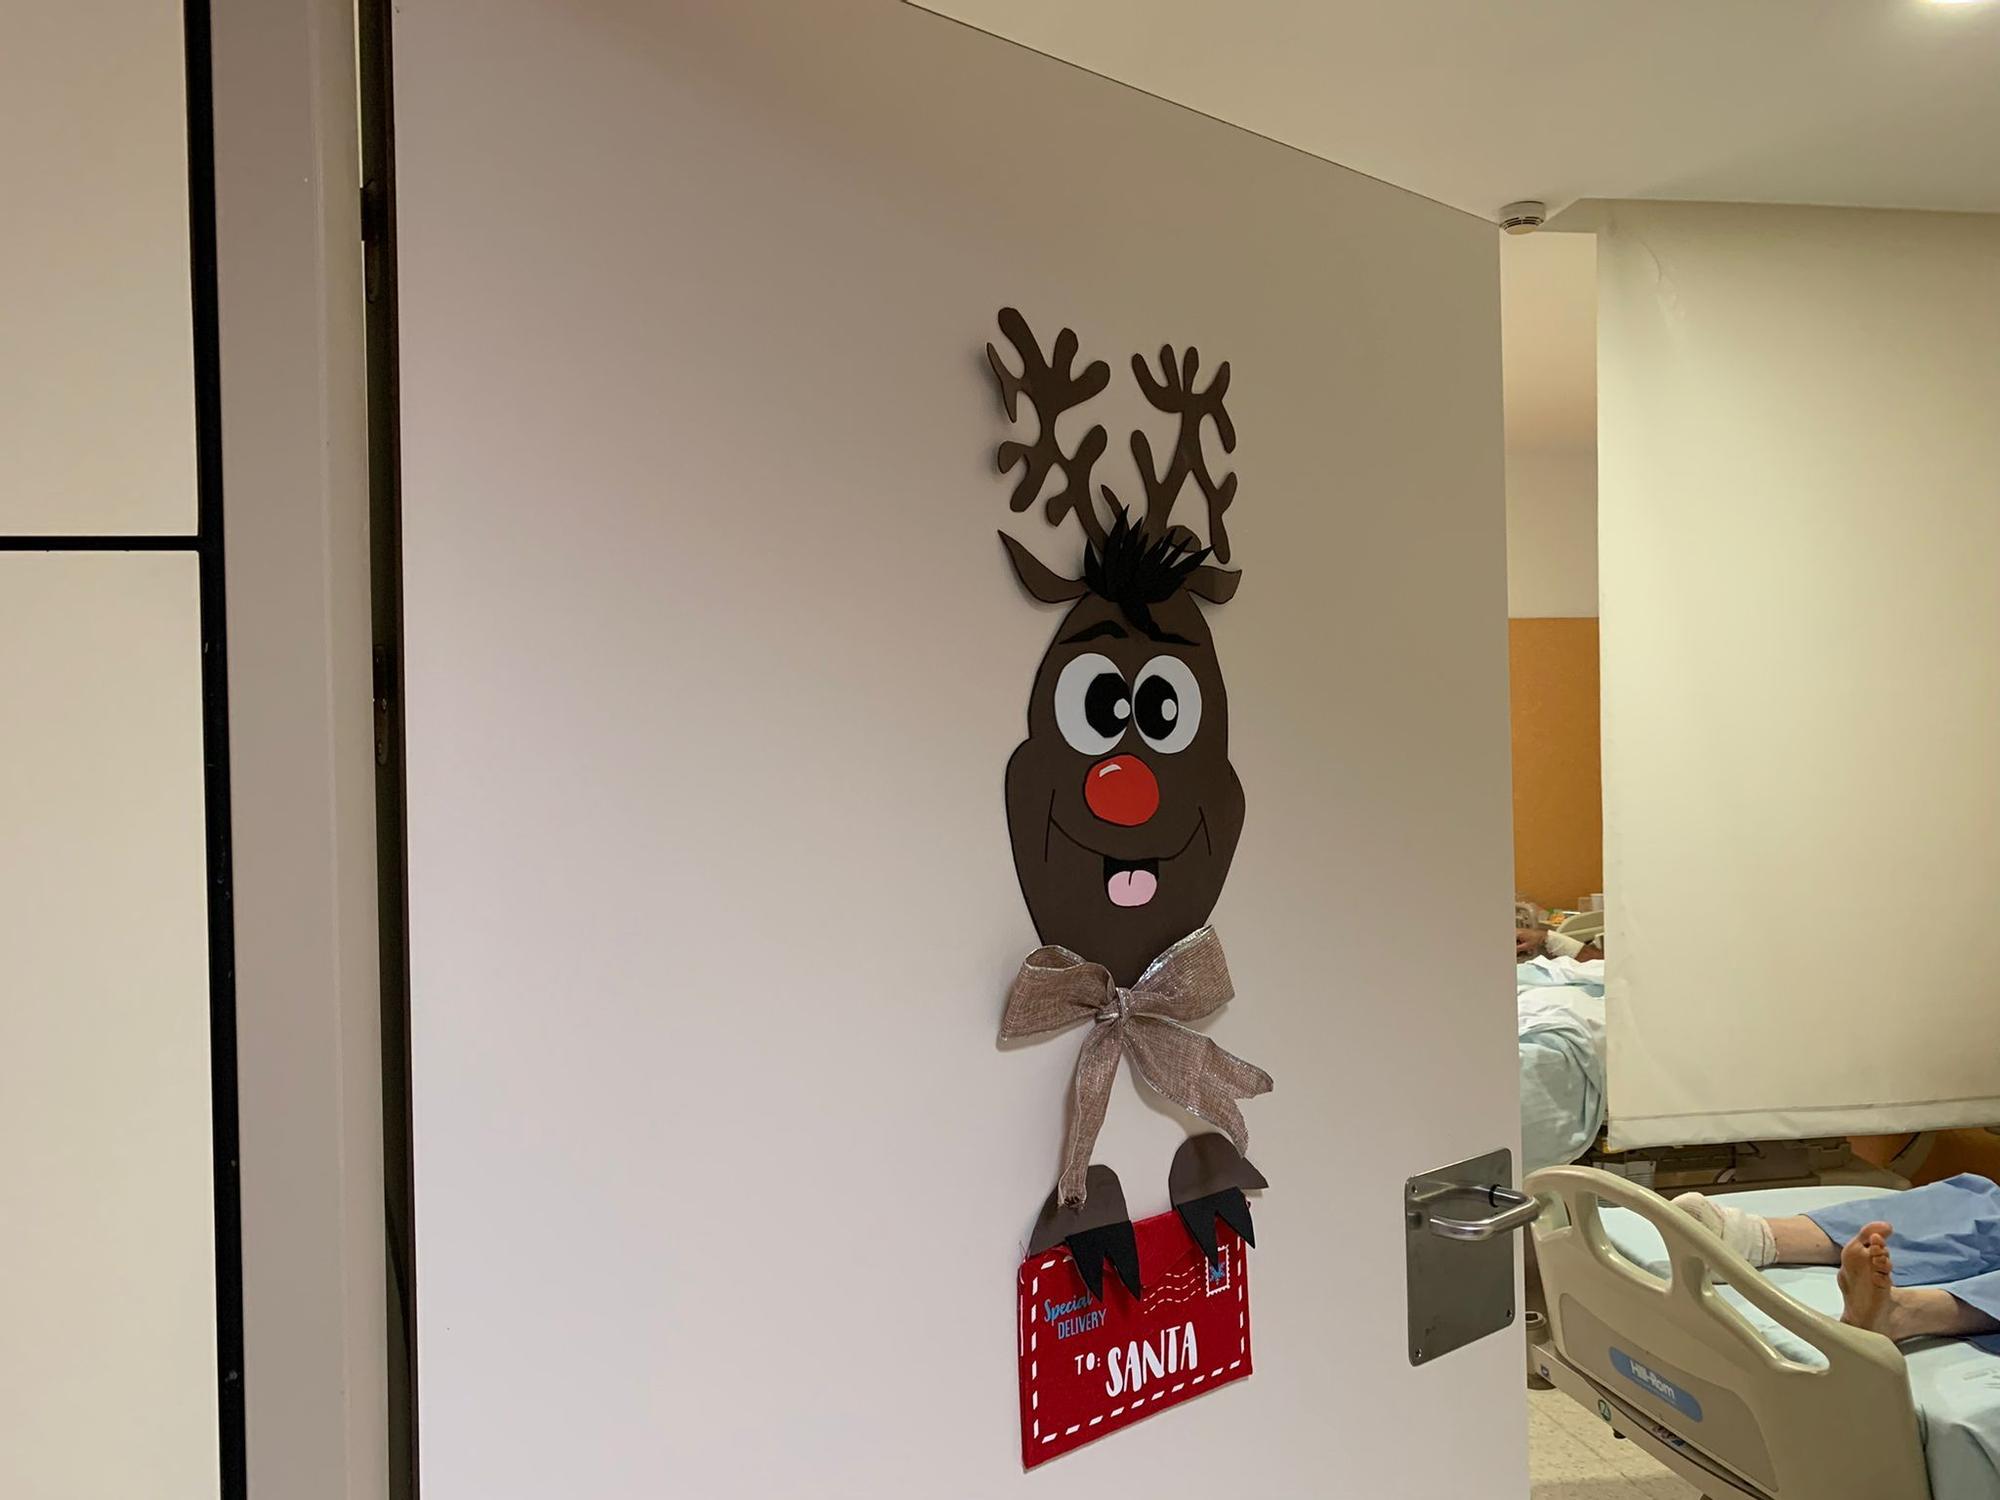 Los mejores adornos navideños del Hospital Clínico en 2021